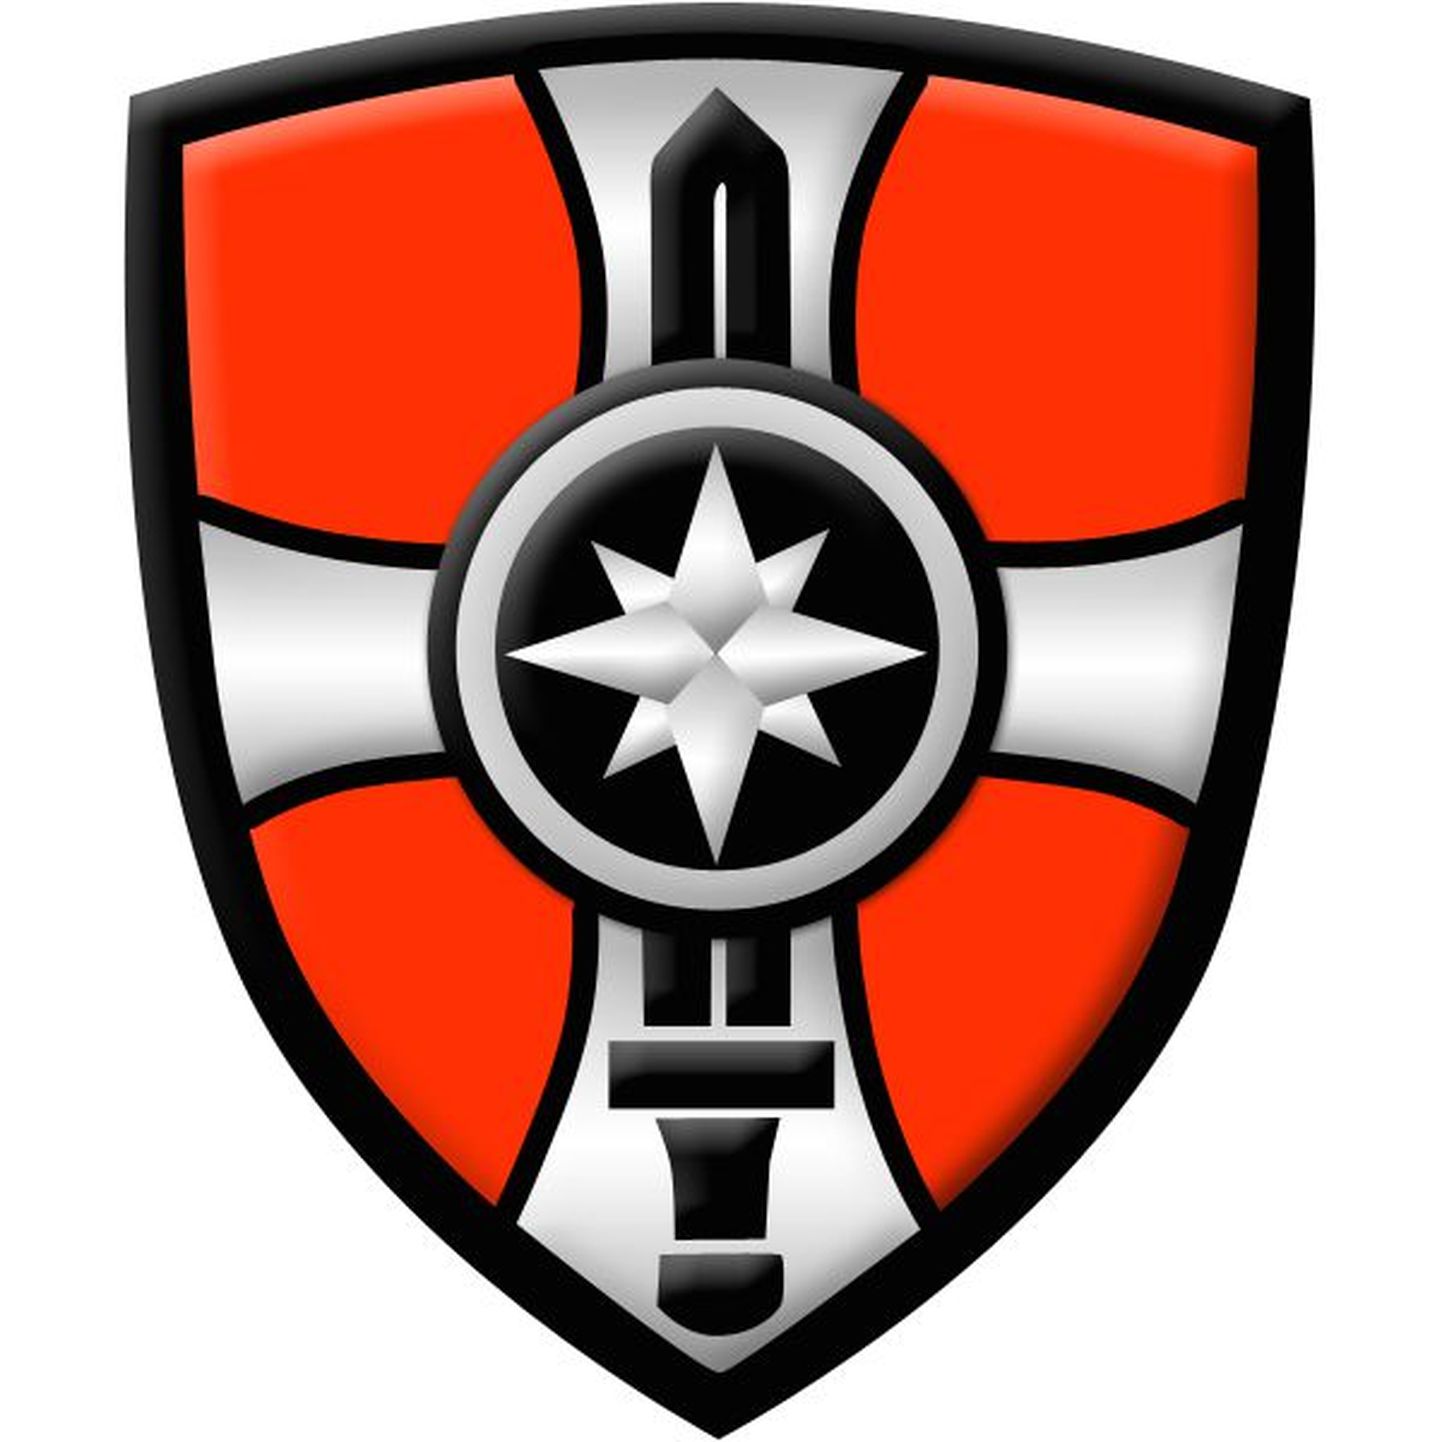 Põhja kaitseringkonna sümbol.